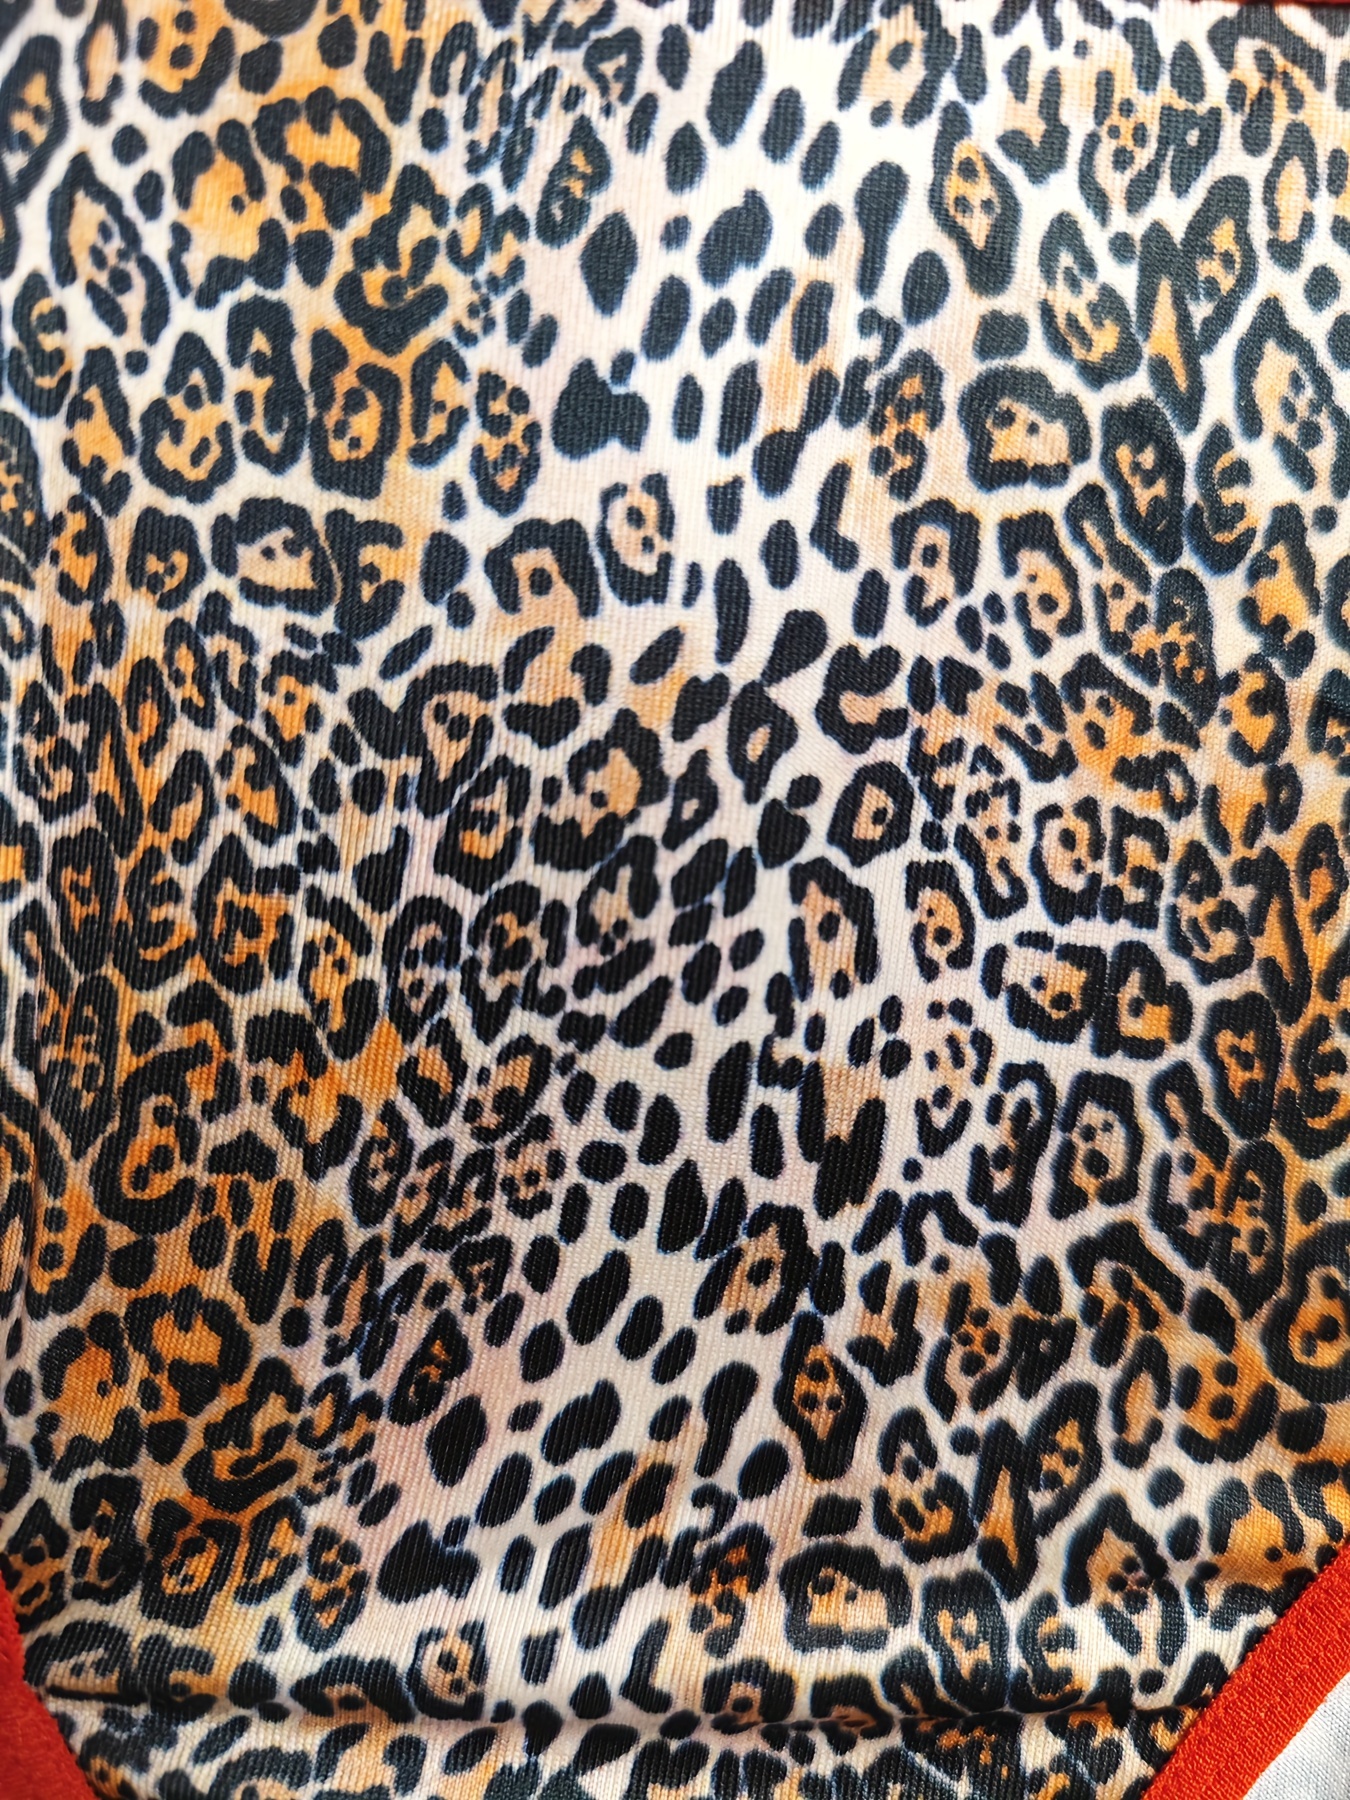 Plus Size Sexy Lingerie Set Women's Plus Leopard Print Cut - Temu